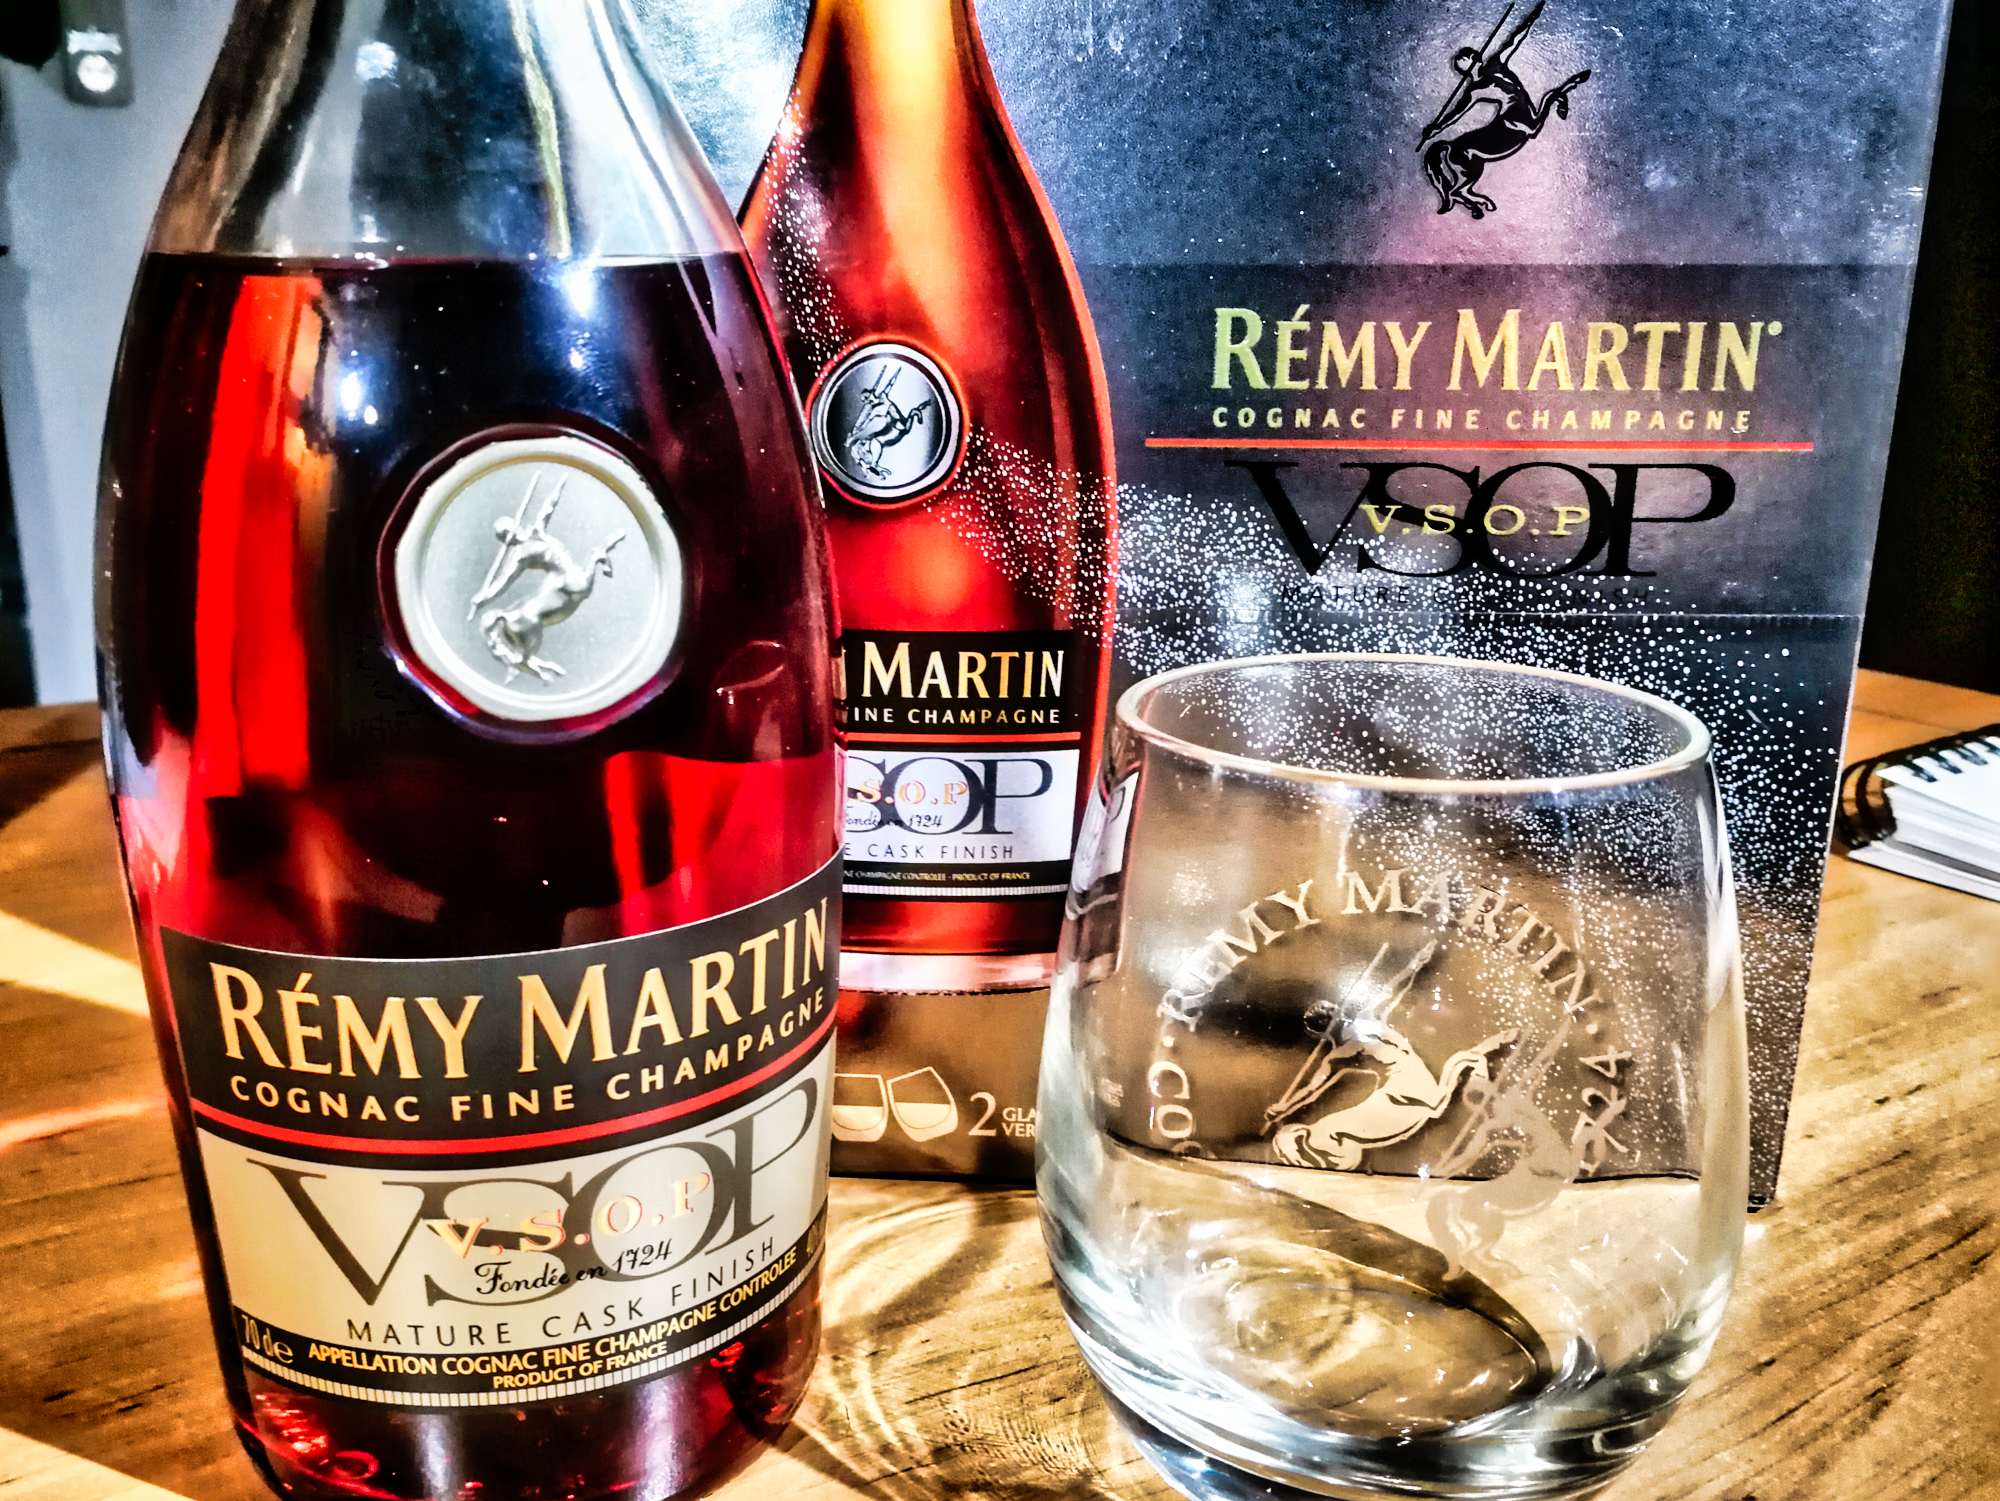 Rémy Martin VSOP Mature Cask Finish Cognac